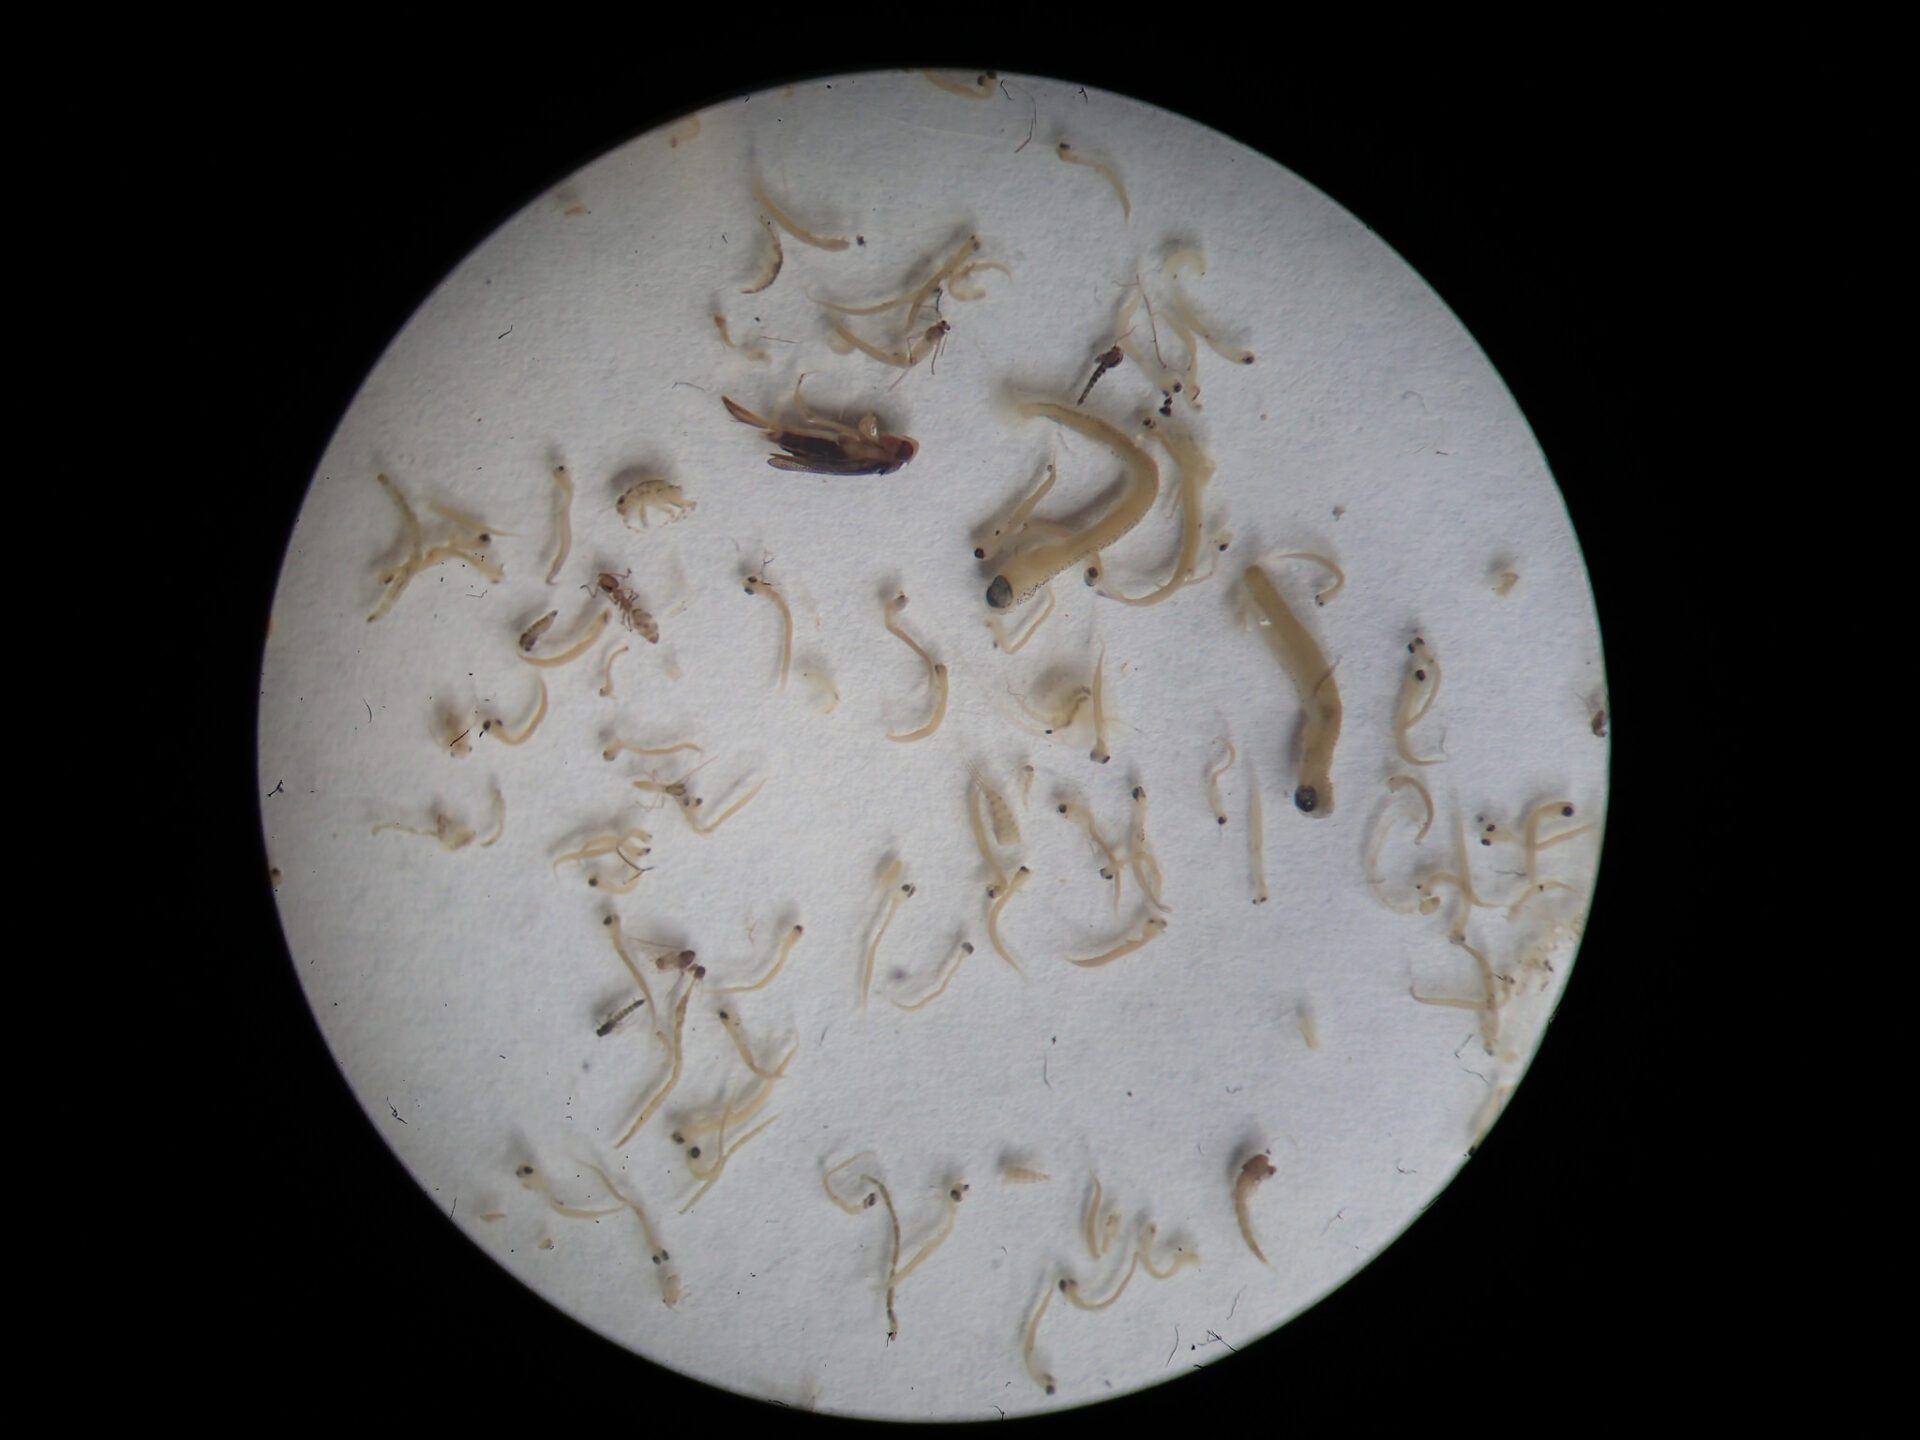 Fish larvae from drift net sample